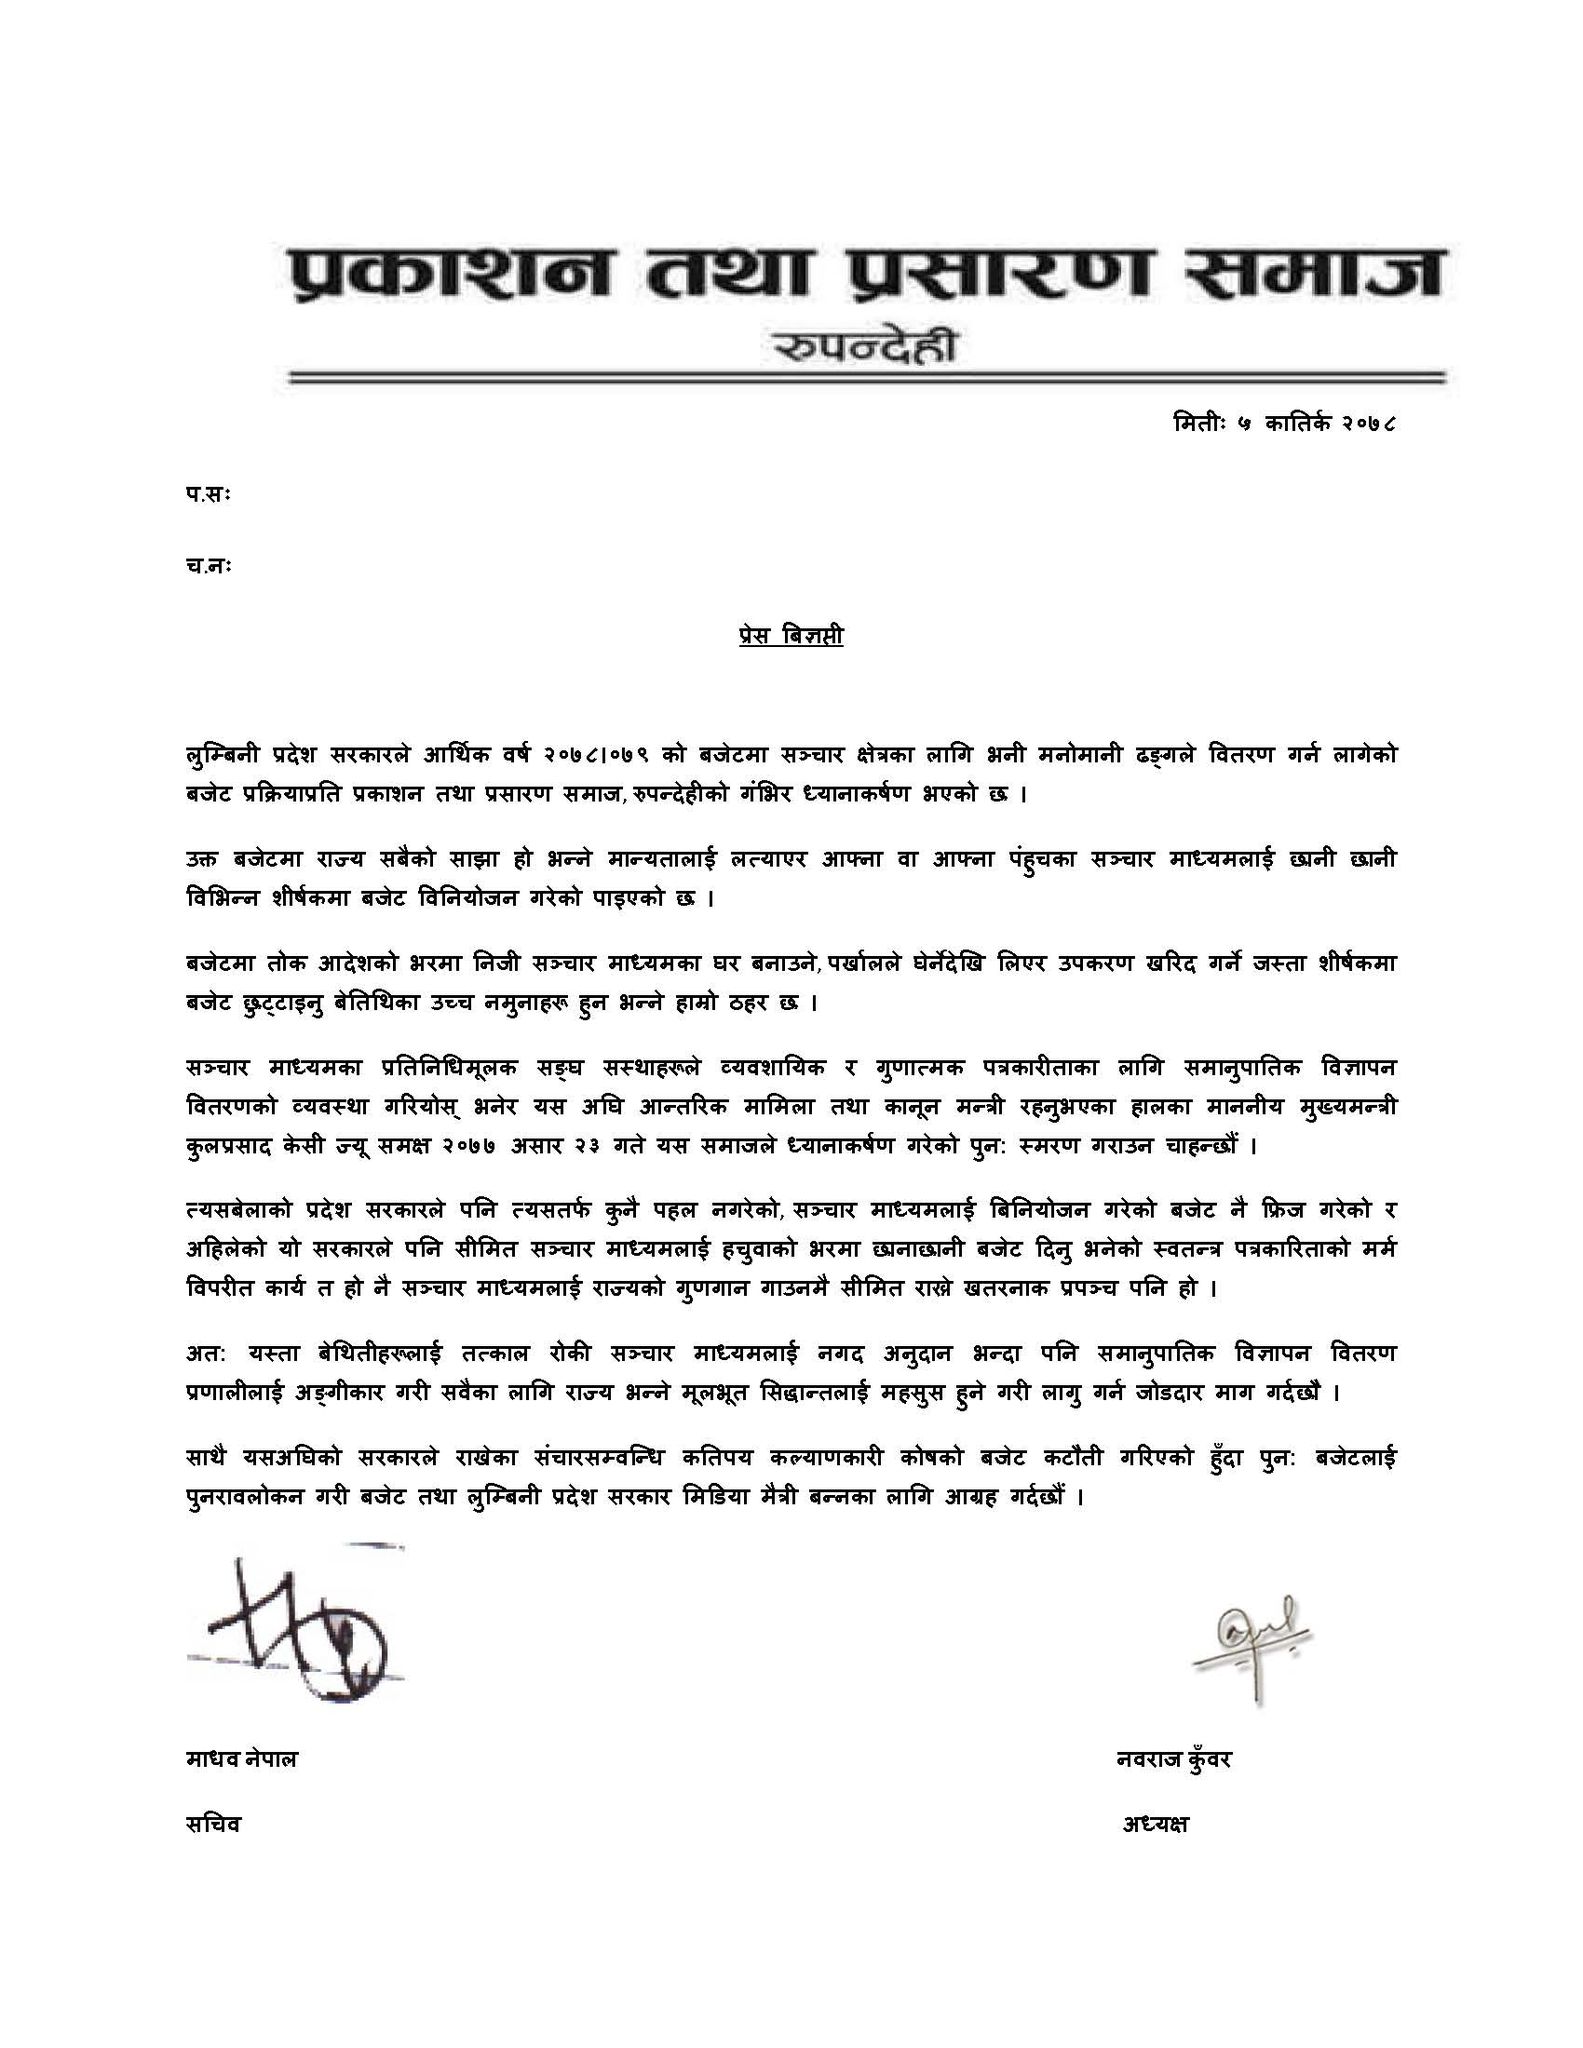 आफ्ना र पहुँचवाला सञ्चार गृहलाई मात्रै बजेट वितरण गरेकोप्रति प्रकाशन समाजद्वारा लुम्बिनी प्रदेश सरकारलाई ध्यानाकर्षण